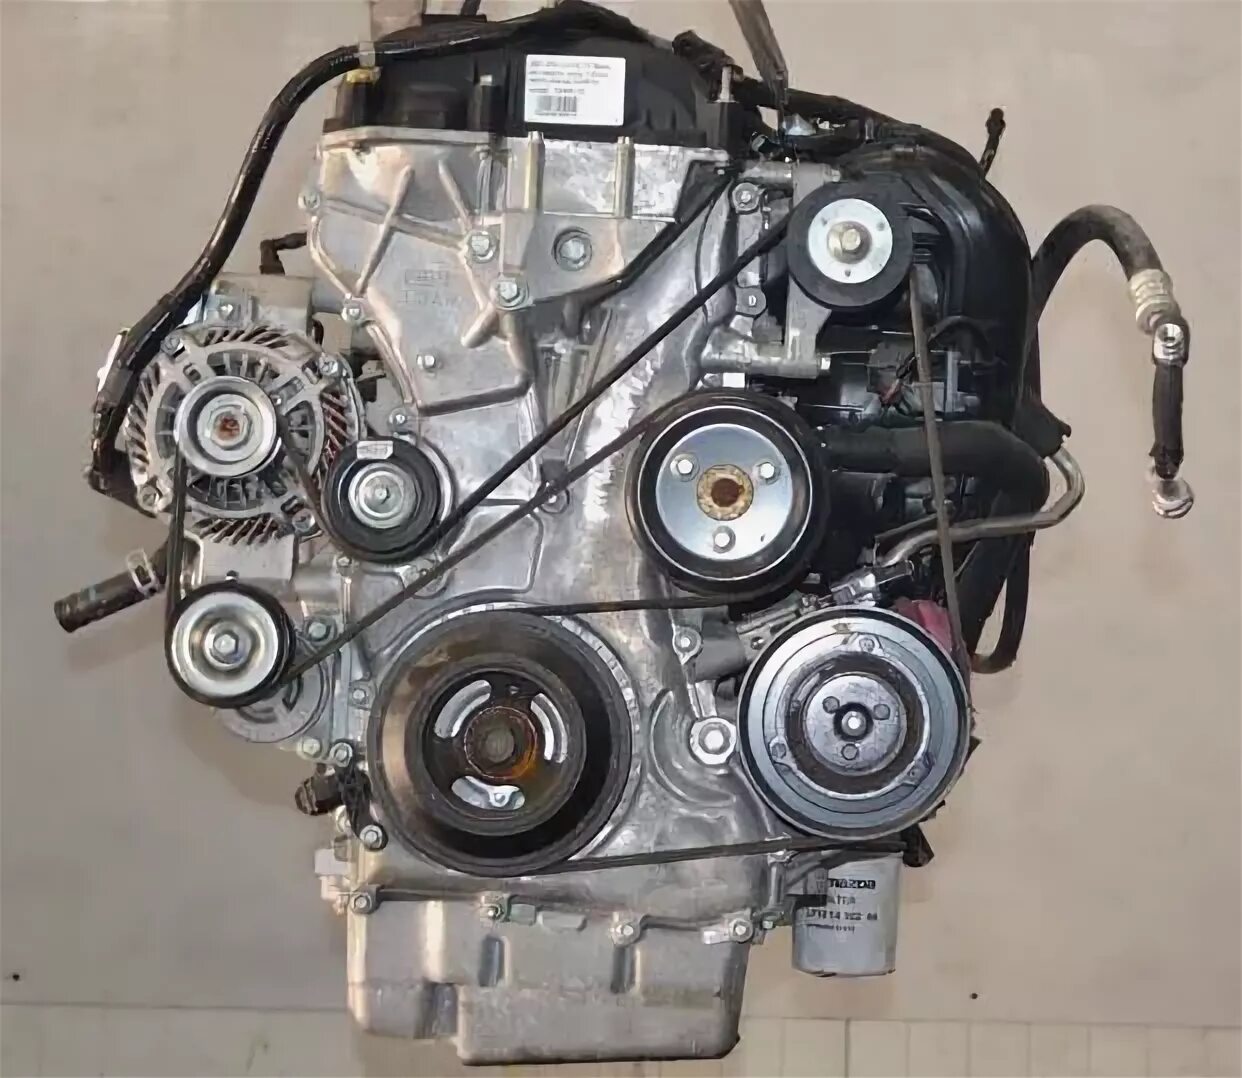 2.5 л 170 л с. Двигатель l5-ve Mazda 2.5. Двигатель Мазда 6 GH 1.8. Мотор l5 ve Мазда. Двигатель Мазда 6 GH 2.5.